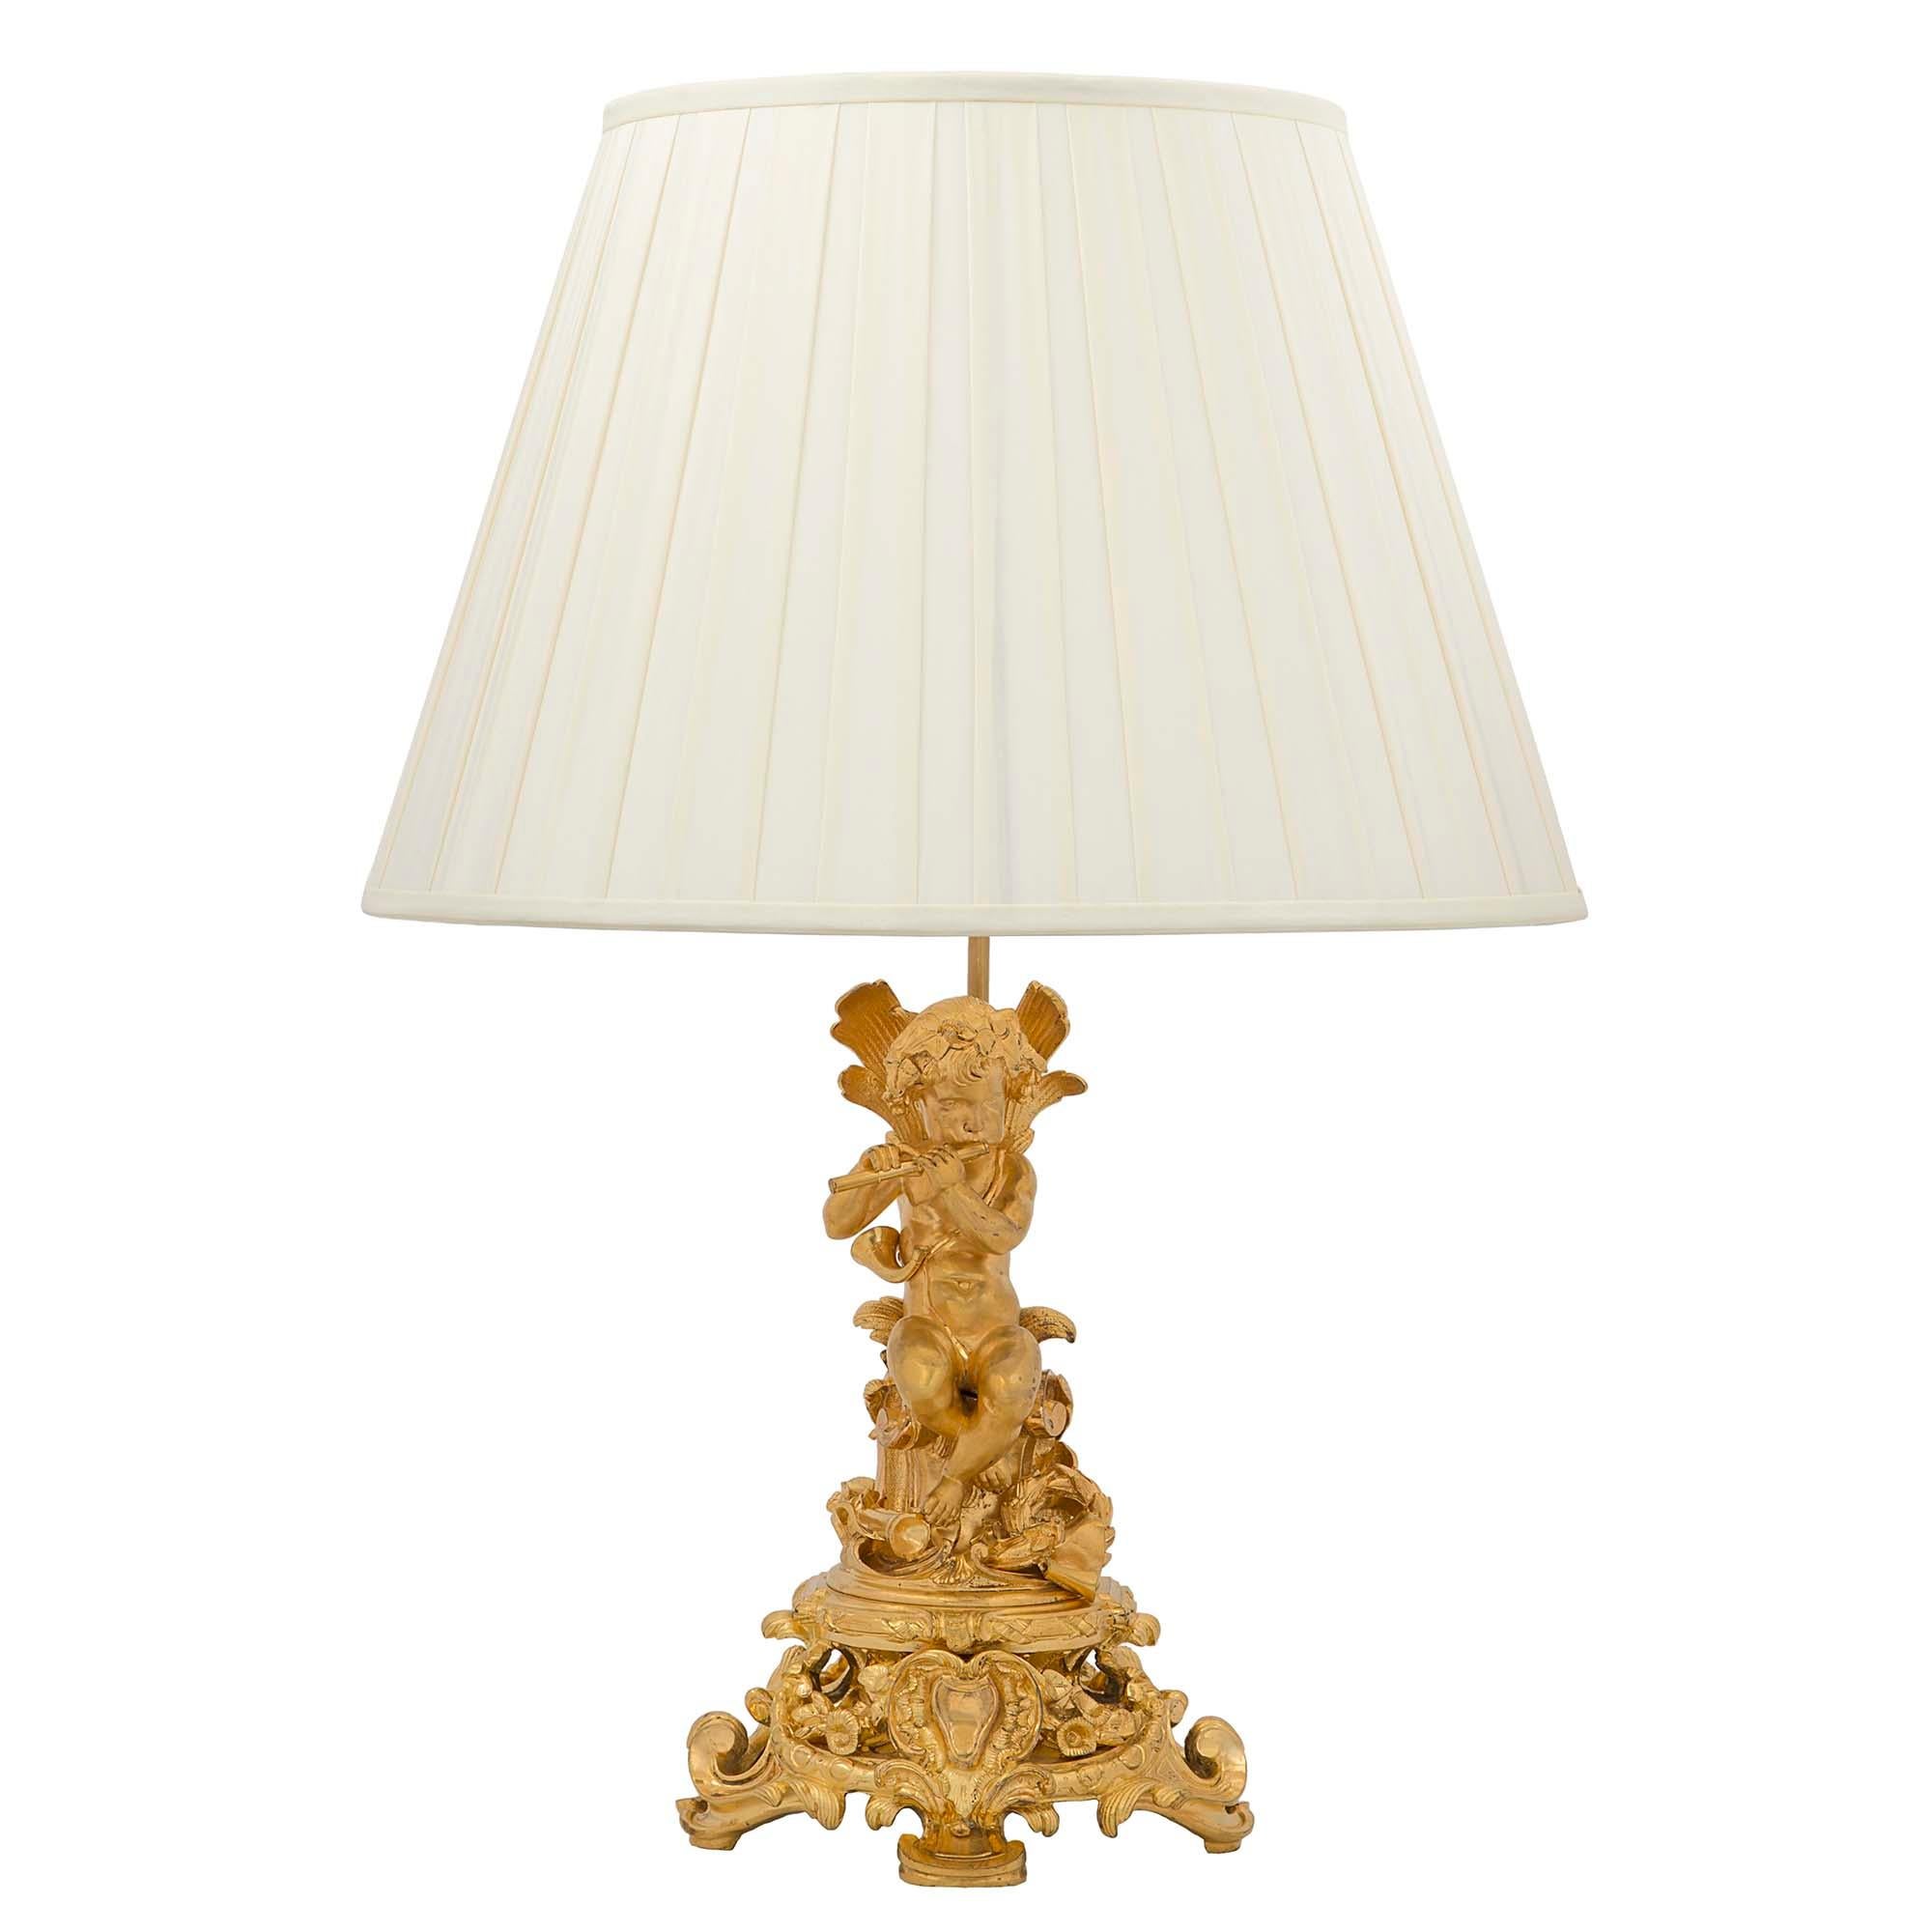 Une belle paire de lampes en bronze doré de style Louis XVI du 19ème siècle. Chaque lampe est surélevée par une base à volutes percées très décorative avec un cabochon central. Au-dessus se trouvent de charmants chérubins assis sur un tronc d'arbre